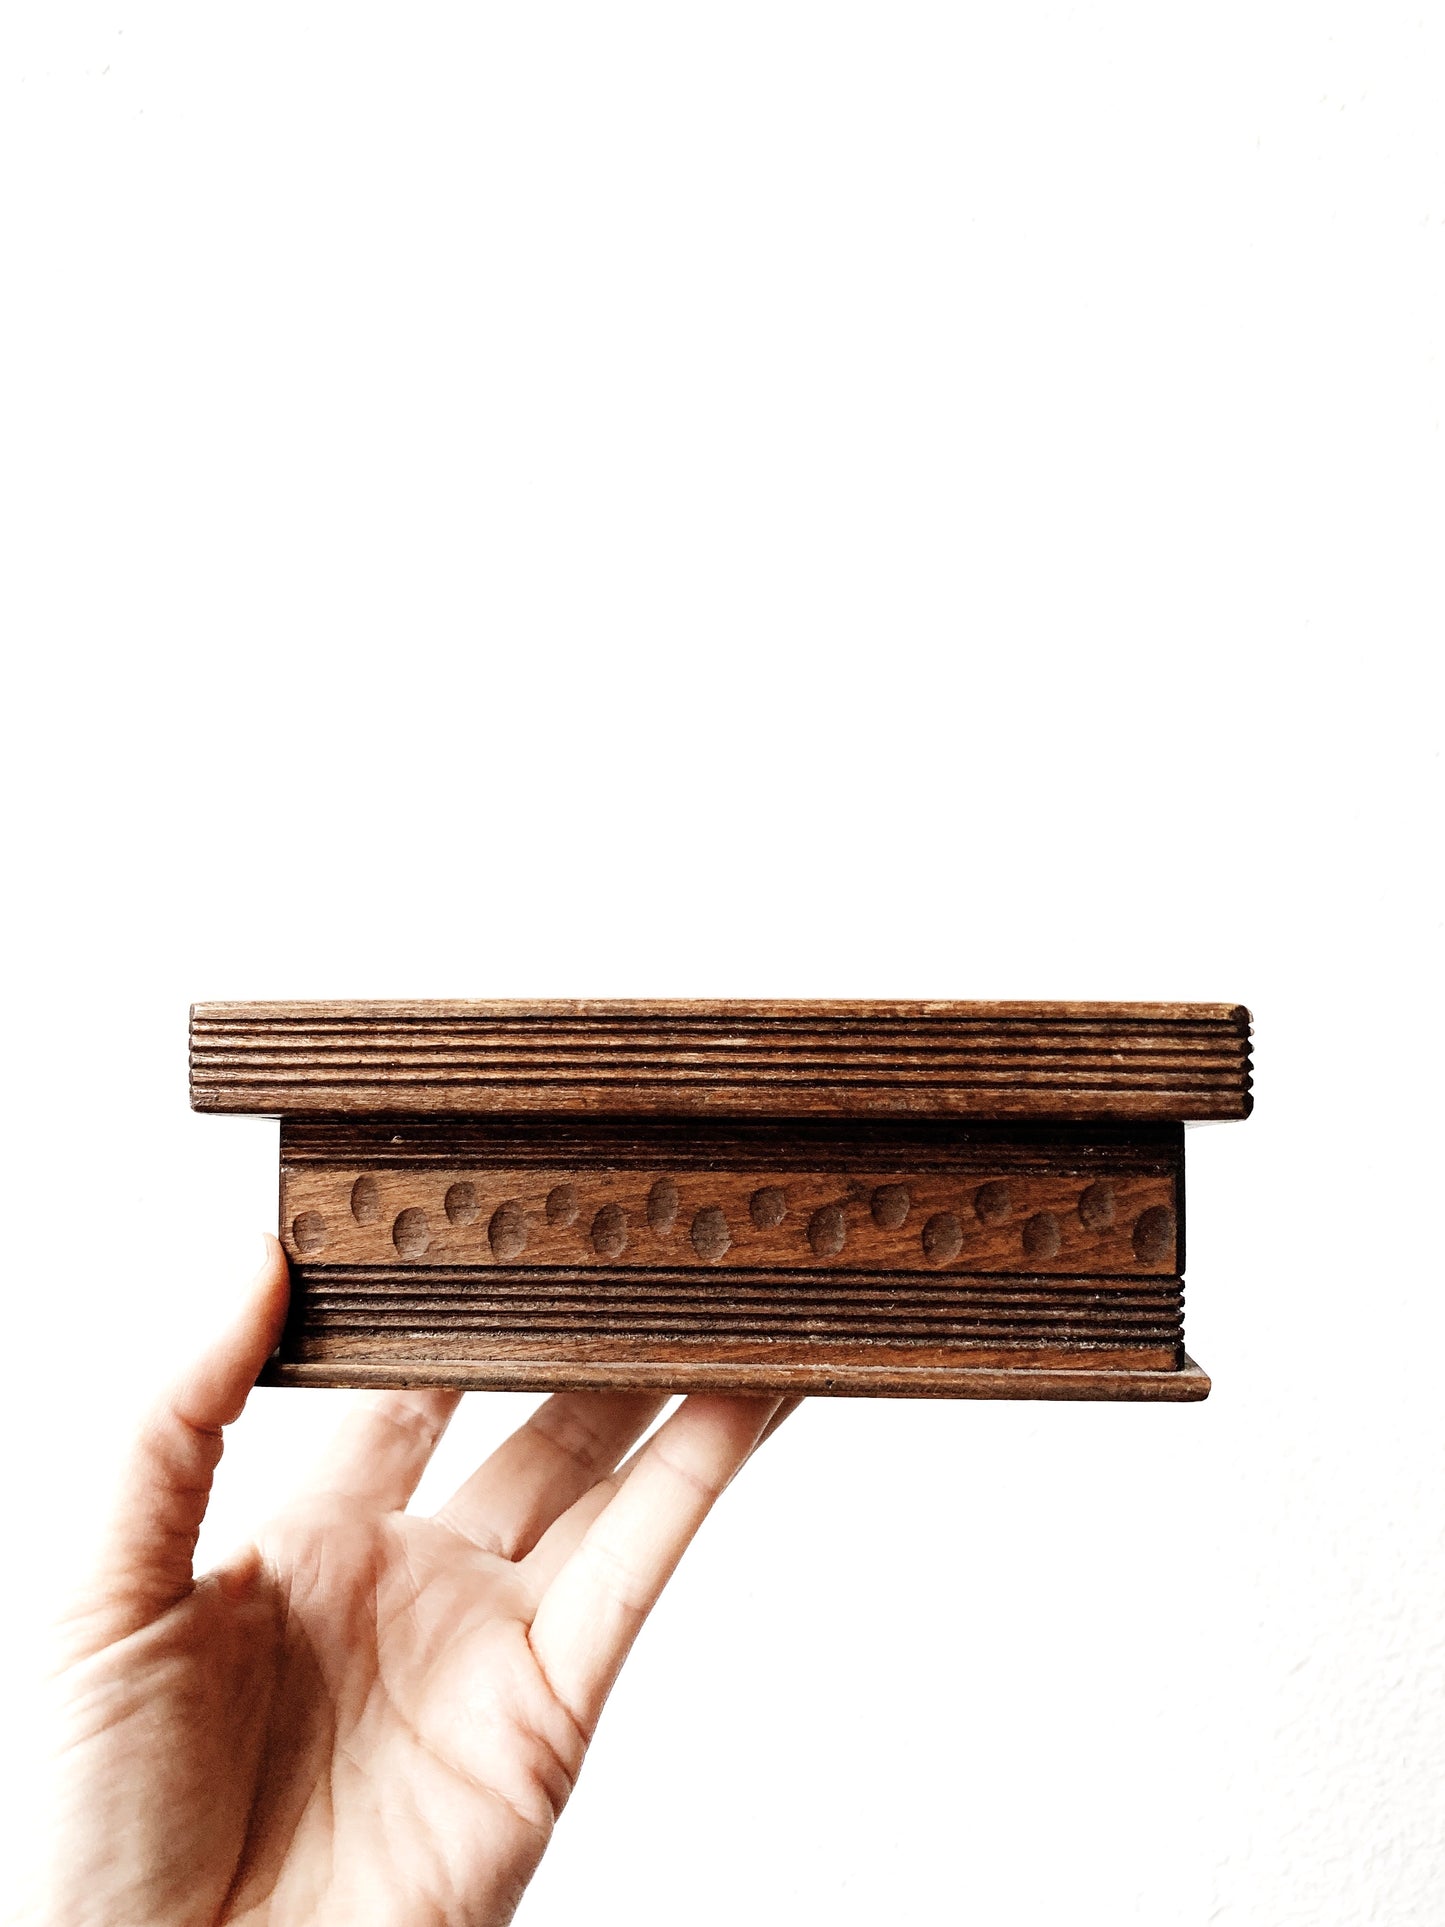 Vintage Carved Wood Box